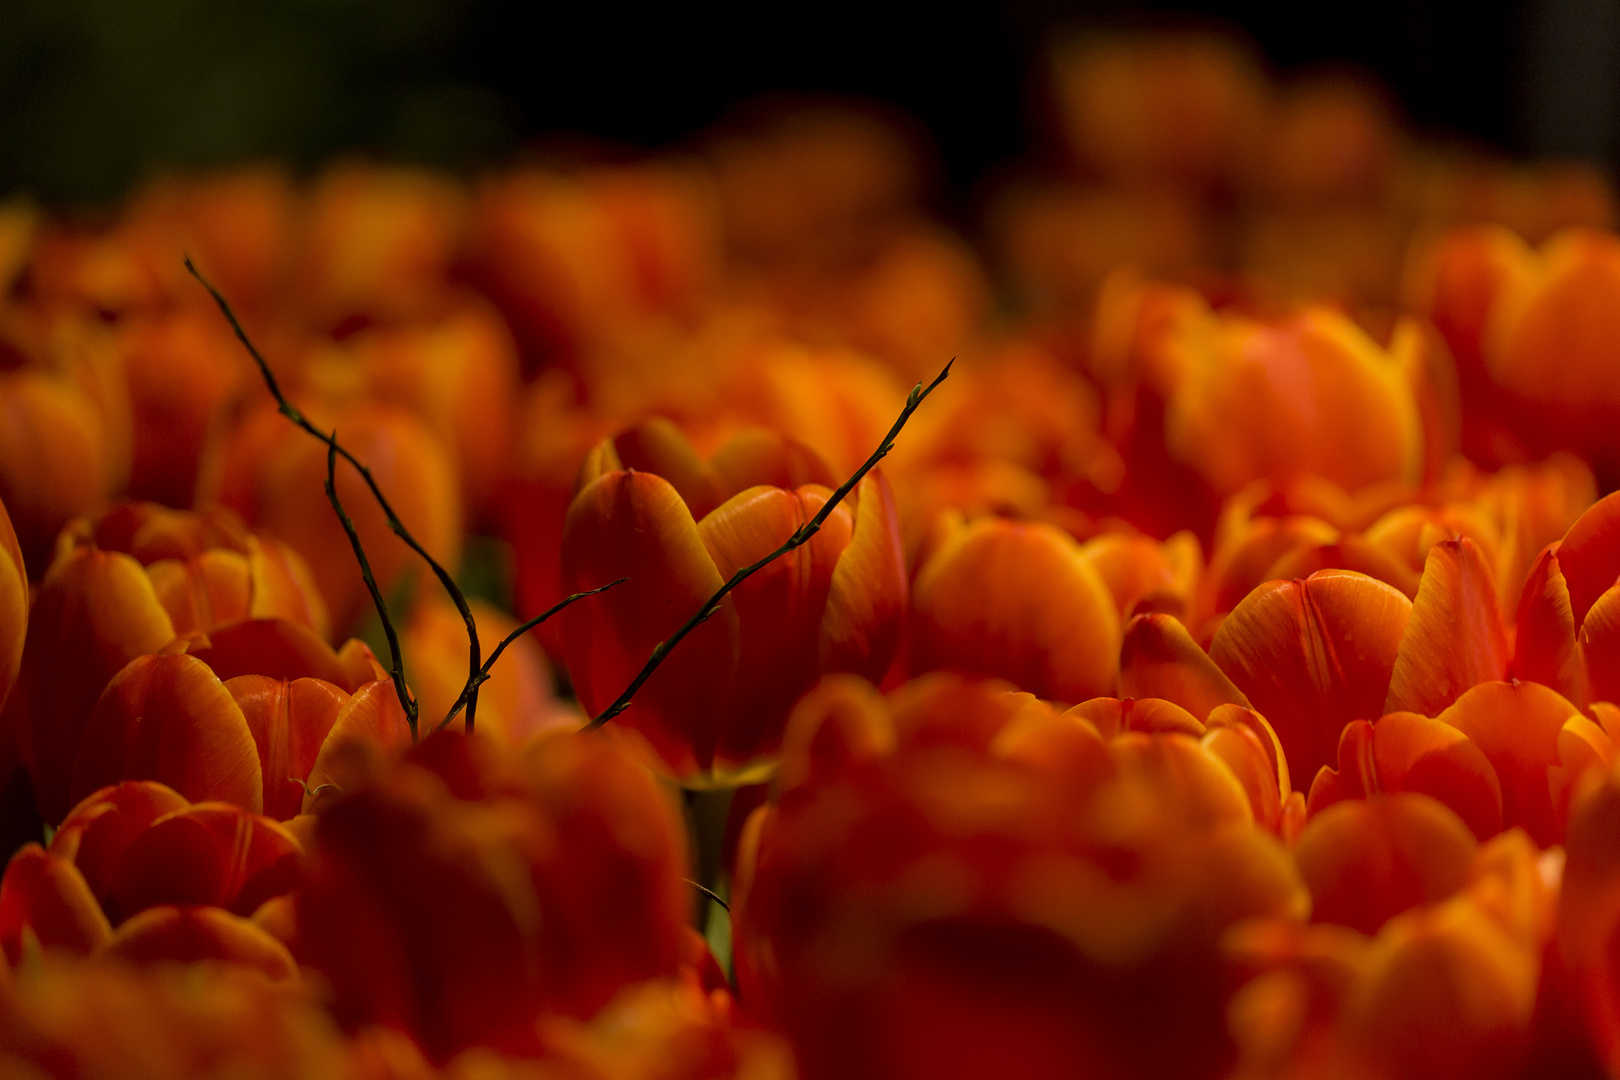 In der Glut der feurigen Tulpenpracht